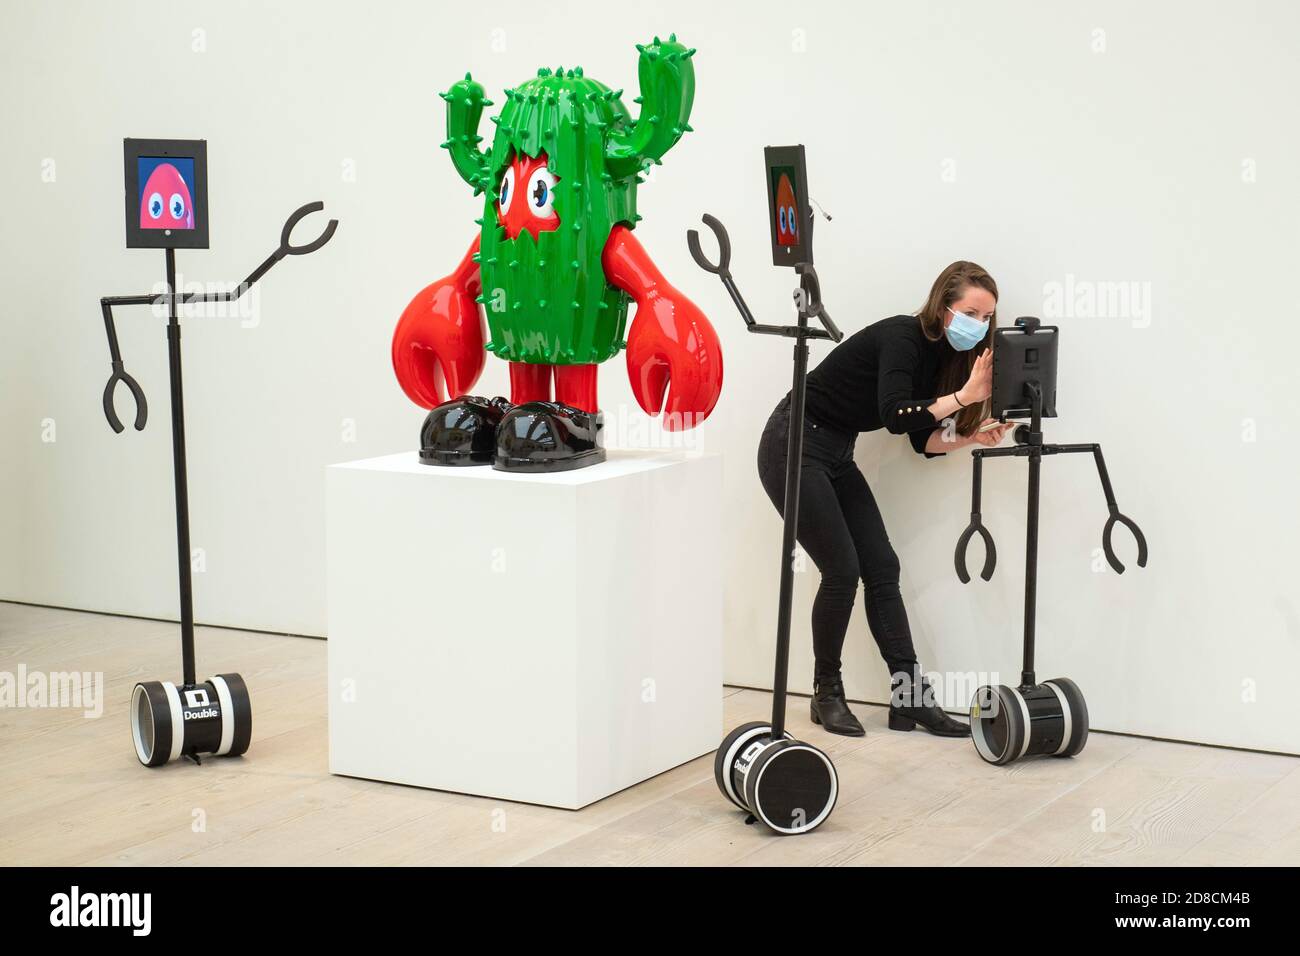 Die Mitarbeiter der Galerie haben ferngesteuerte Roboter eingerichtet, mit denen Kunstwerke in einer Vorschau der Ausstellung "Philip Colbert: Lobsteropolis" in der Saatchi Gallery in London aus der Ferne betrachtet werden können, die dem Publikum die Möglichkeit bietet, Kunstwerke vor Ort oder über Roboter bequem von zu Hause aus zu betrachten. Stockfoto